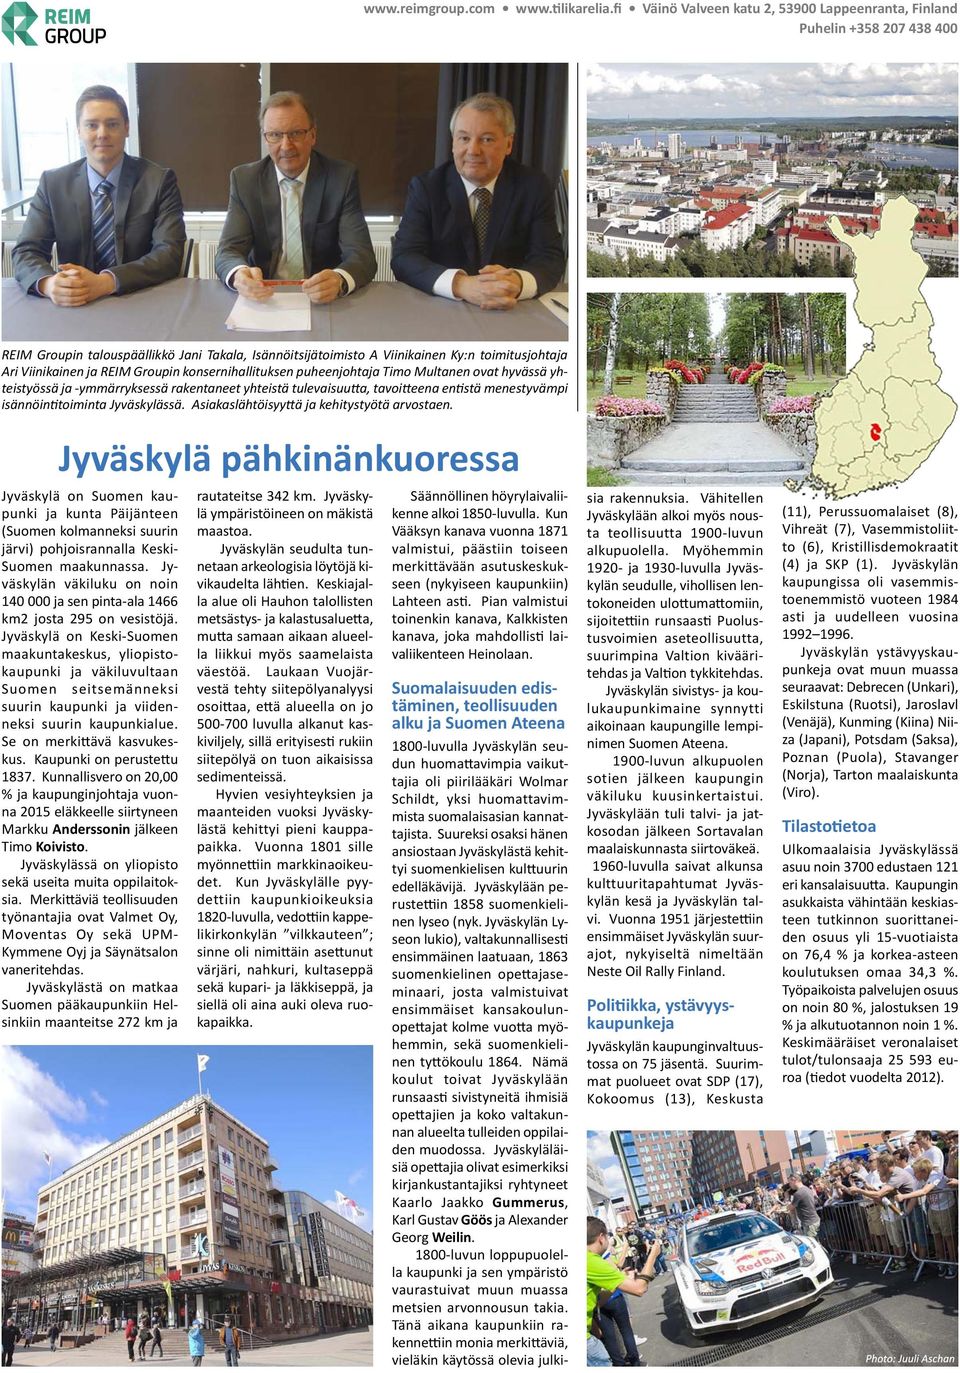 Groupin konsernihallituksen puheenjohtaja Timo Multanen ovat hyvässä yhteistyössä ja -ymmärryksessä rakentaneet yhteistä tulevaisuu a, tavoi eena en stä menestyvämpi isännöin toiminta Jyväskylässä.